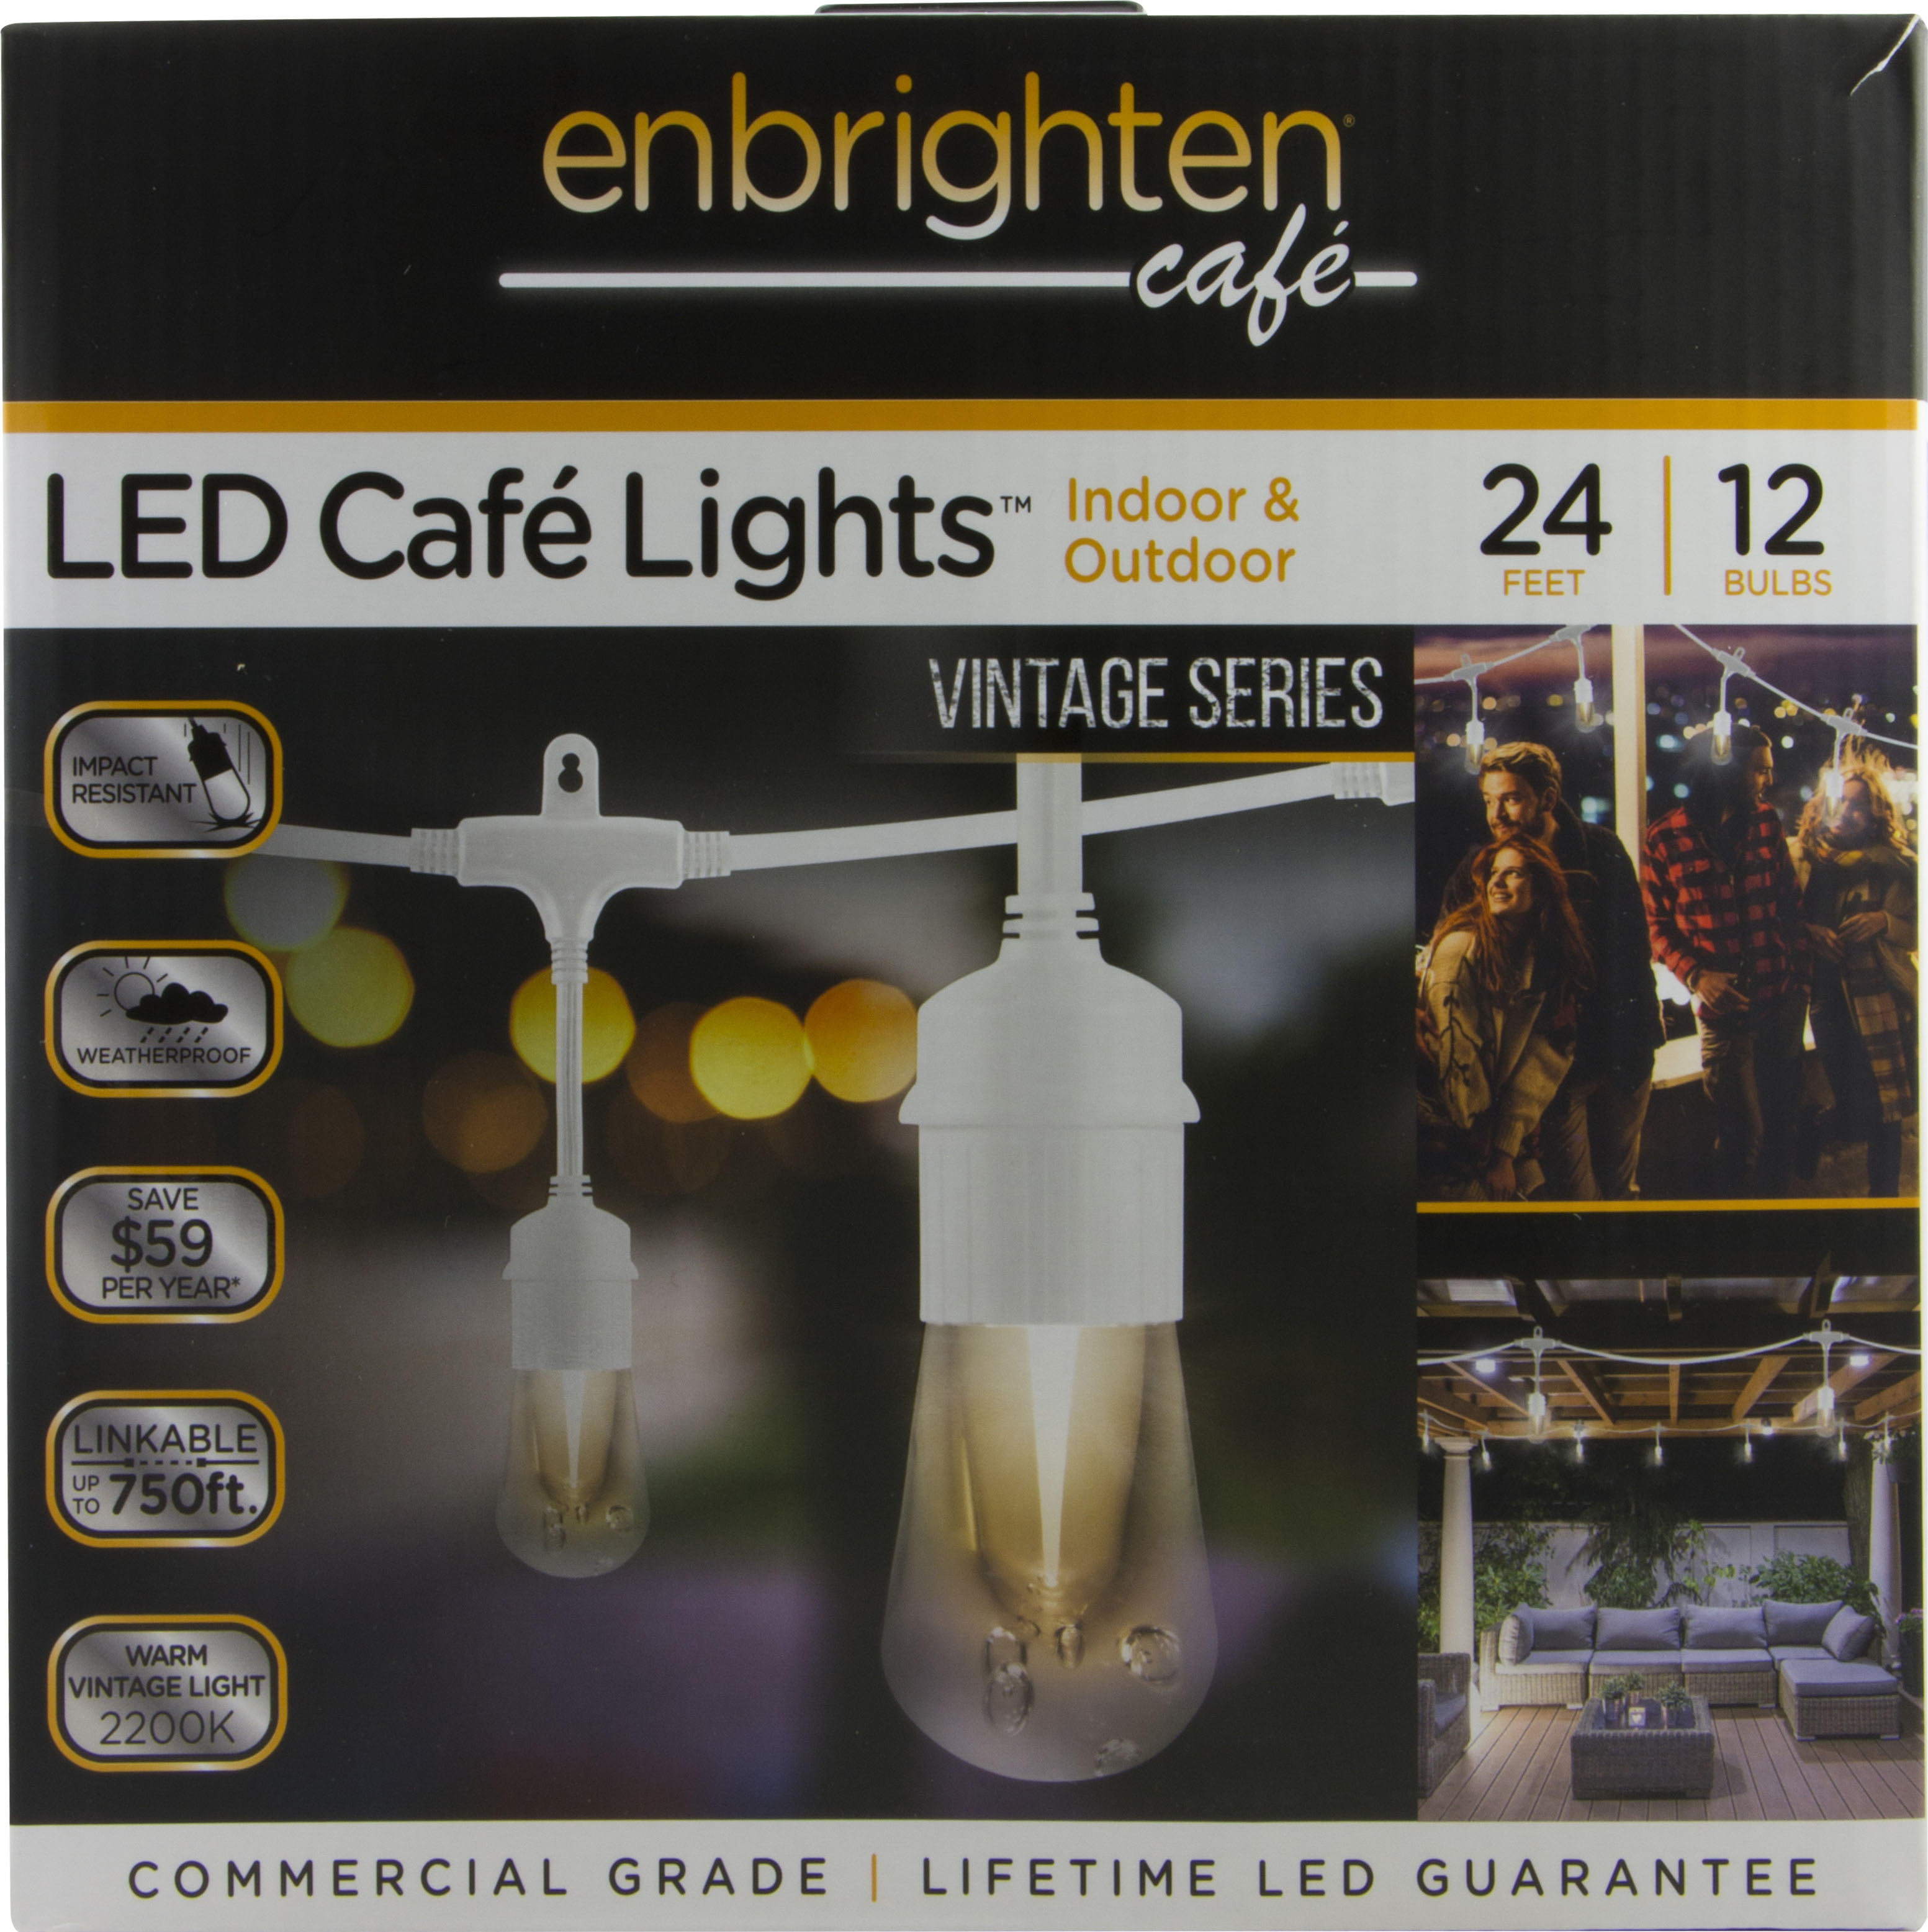 enbrighten cafe led lights review